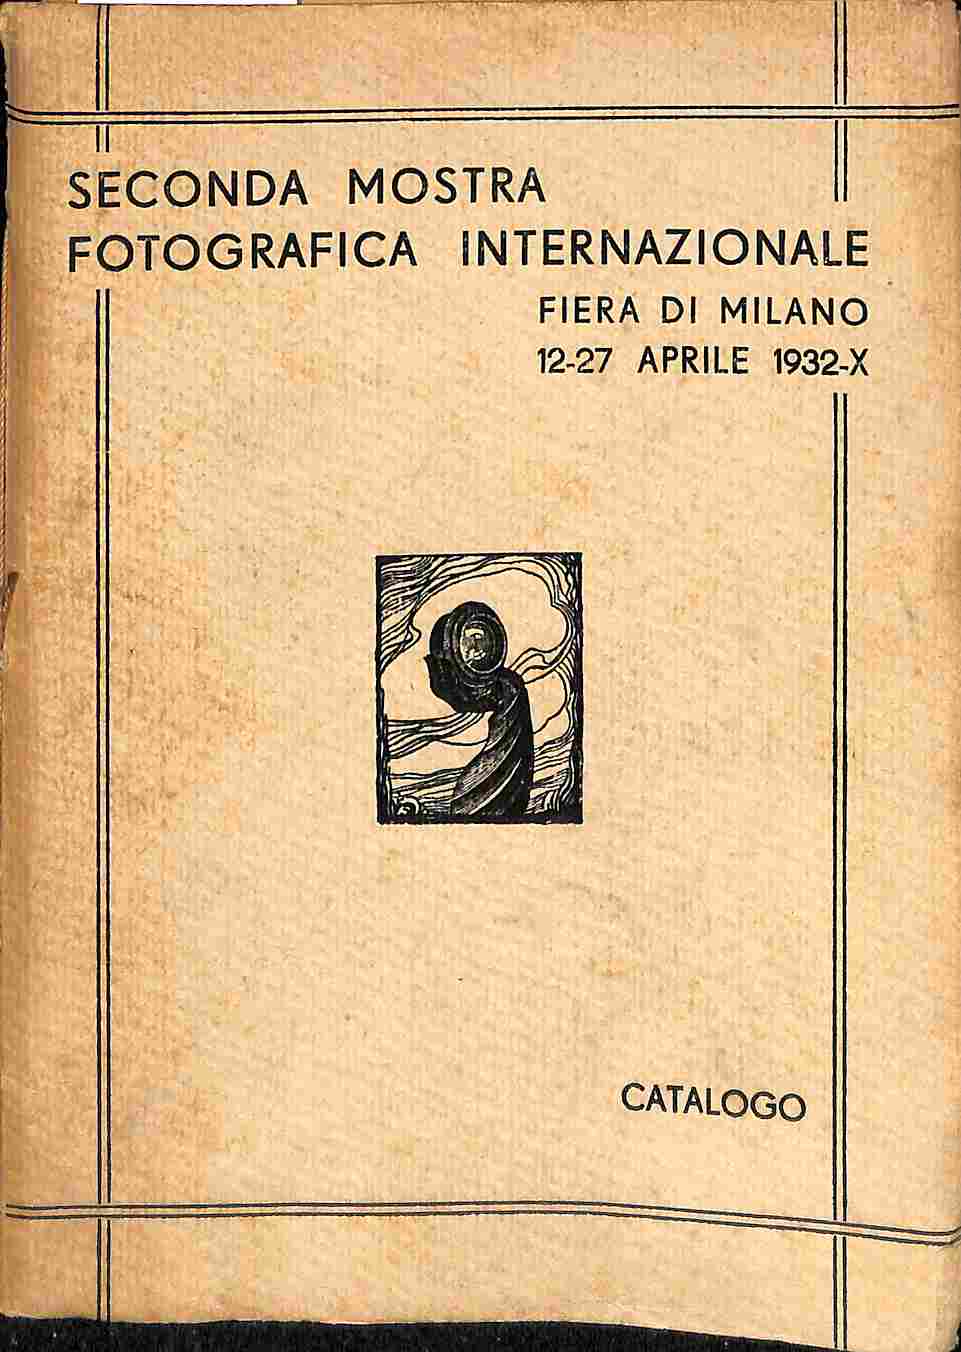 Catalogo della II mostra internazionale fotografica. XIII Fiera di Milano, 12-27 aprile 1932